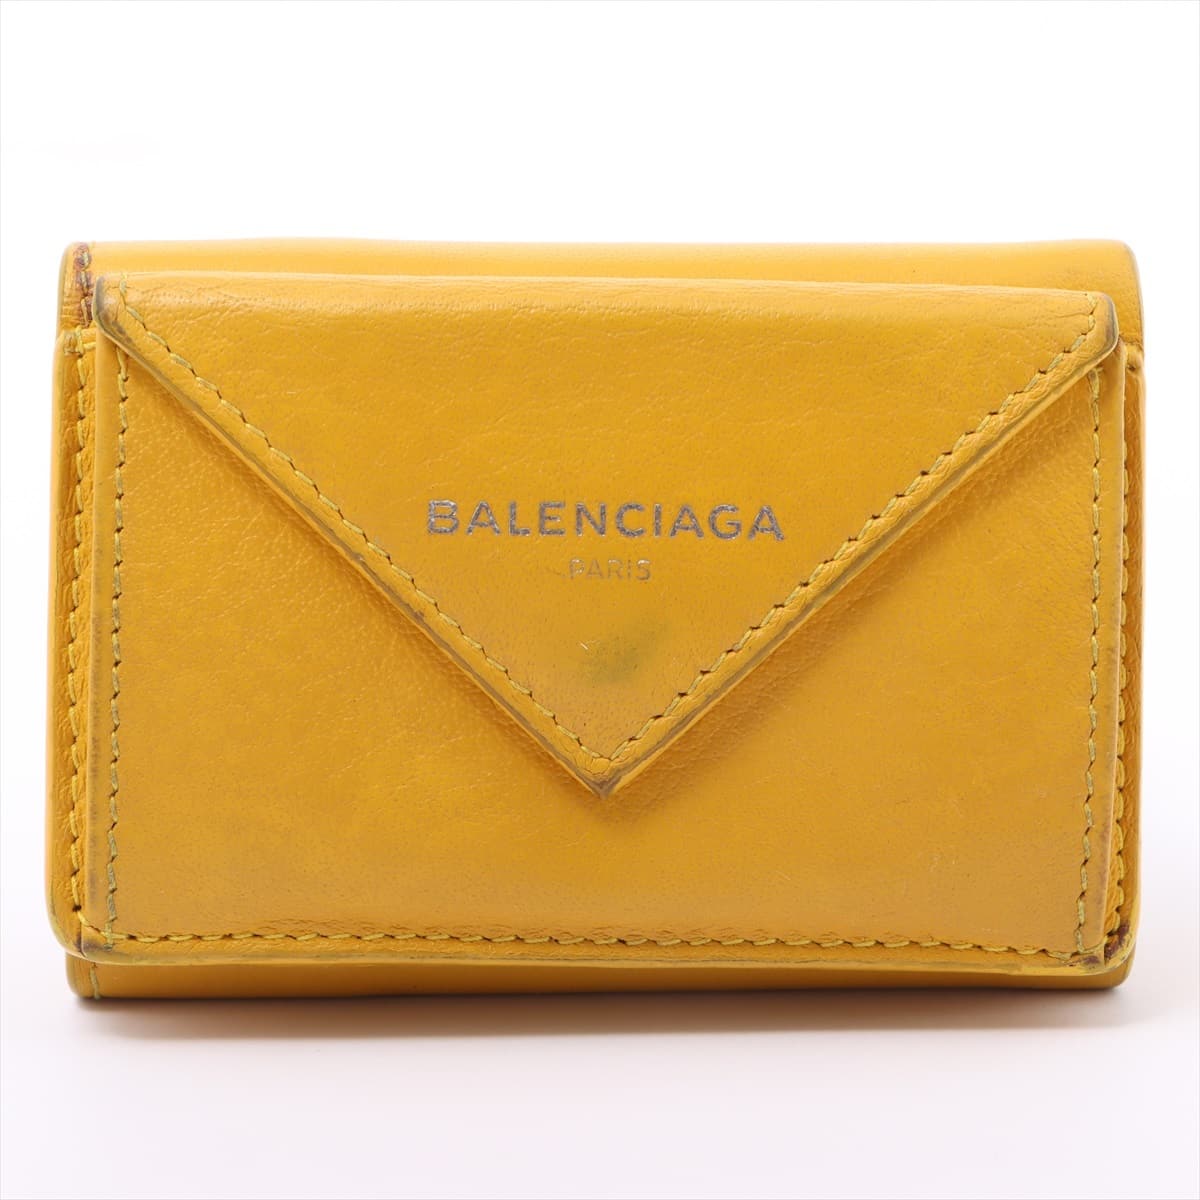 Balenciaga Papier Mini 391446 Leather Wallet Yellow